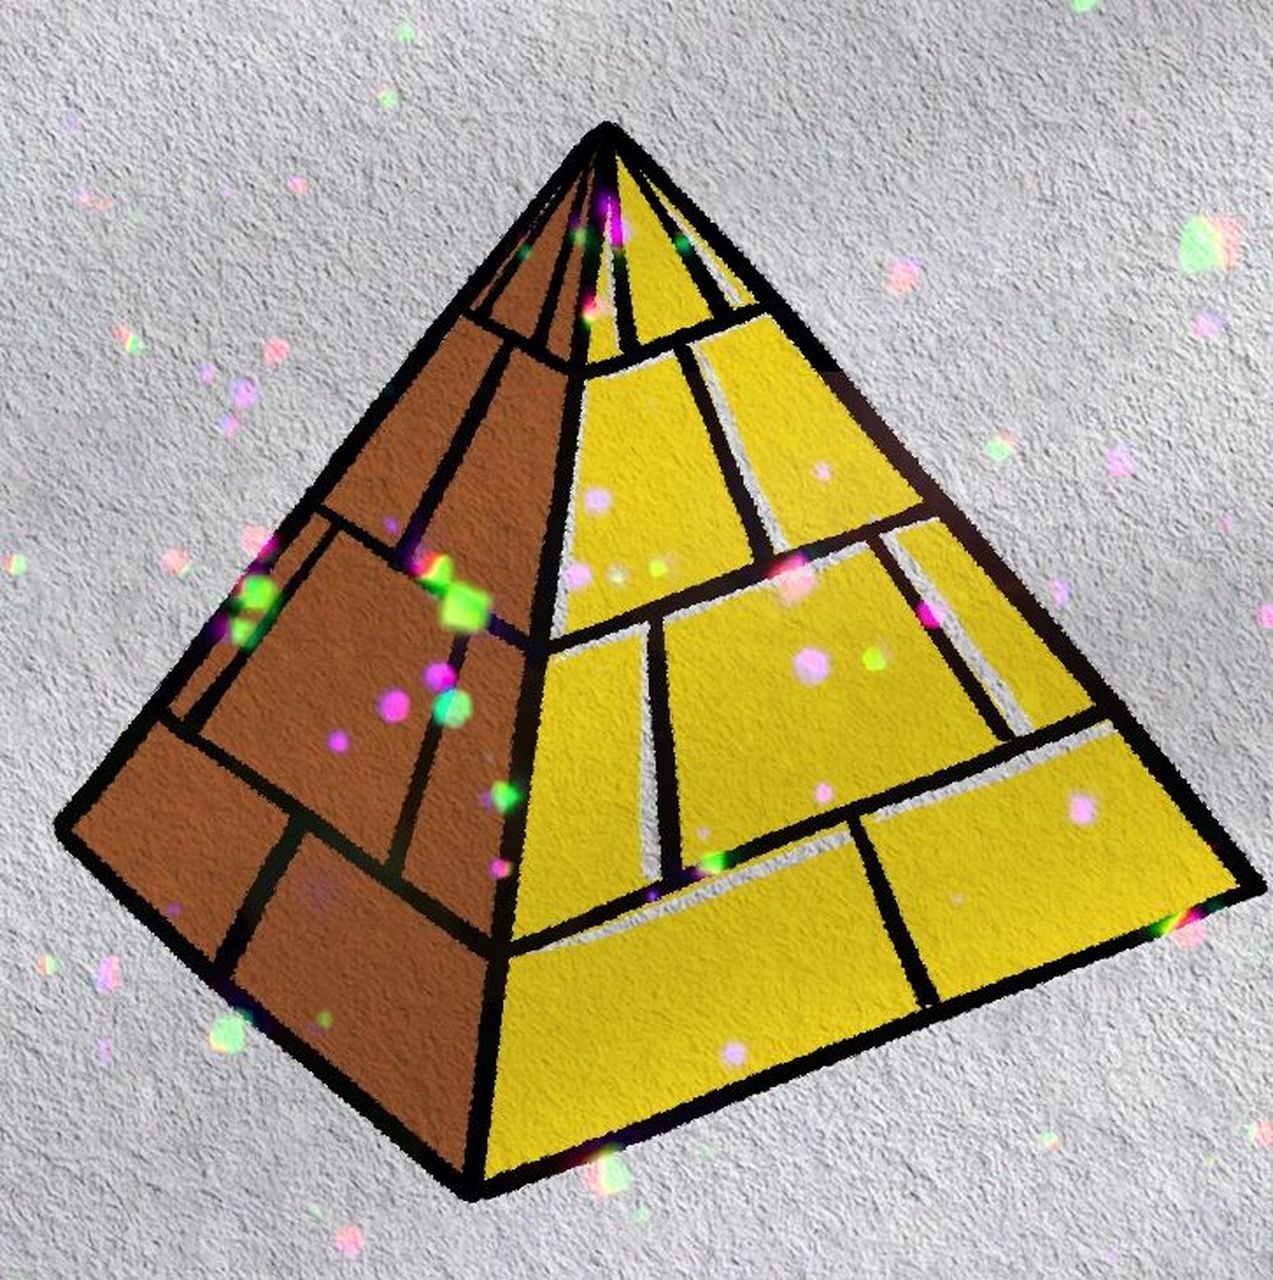 金字塔简笔画 幼儿图片